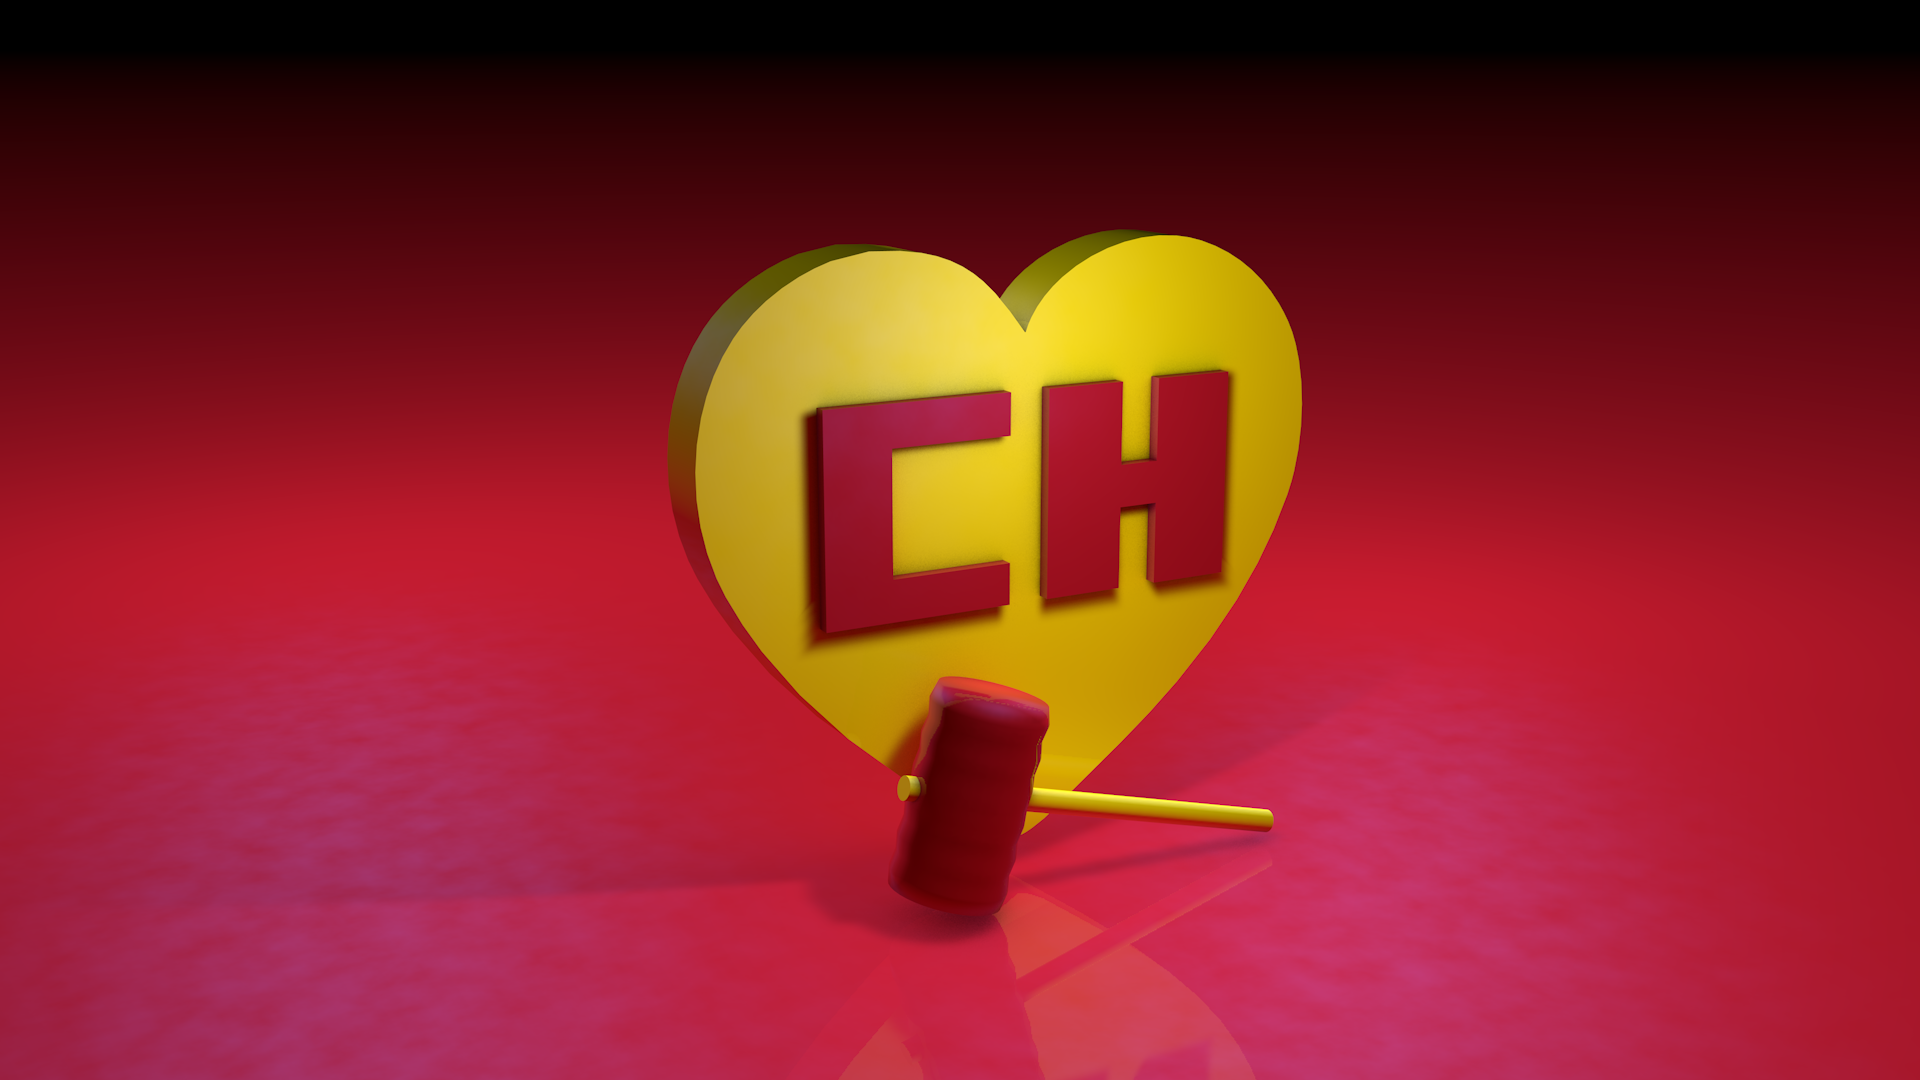 el chapulin colorado 3D logo with hammer. Chapolin, Colorado, Martelo